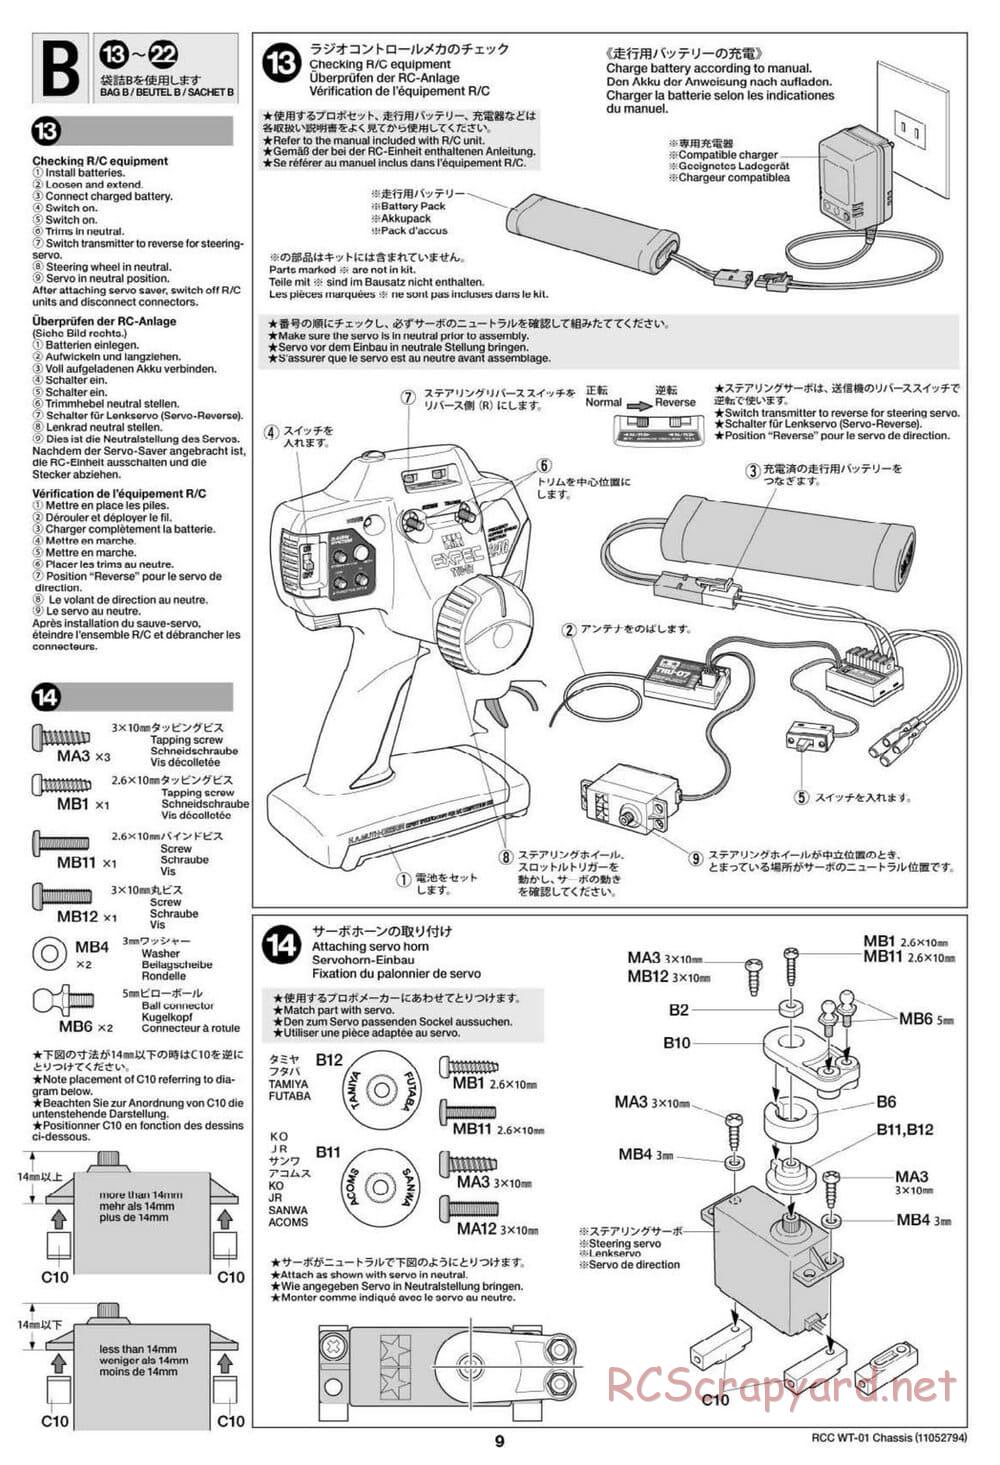 Tamiya - WT-01 Chassis - Manual - Page 9